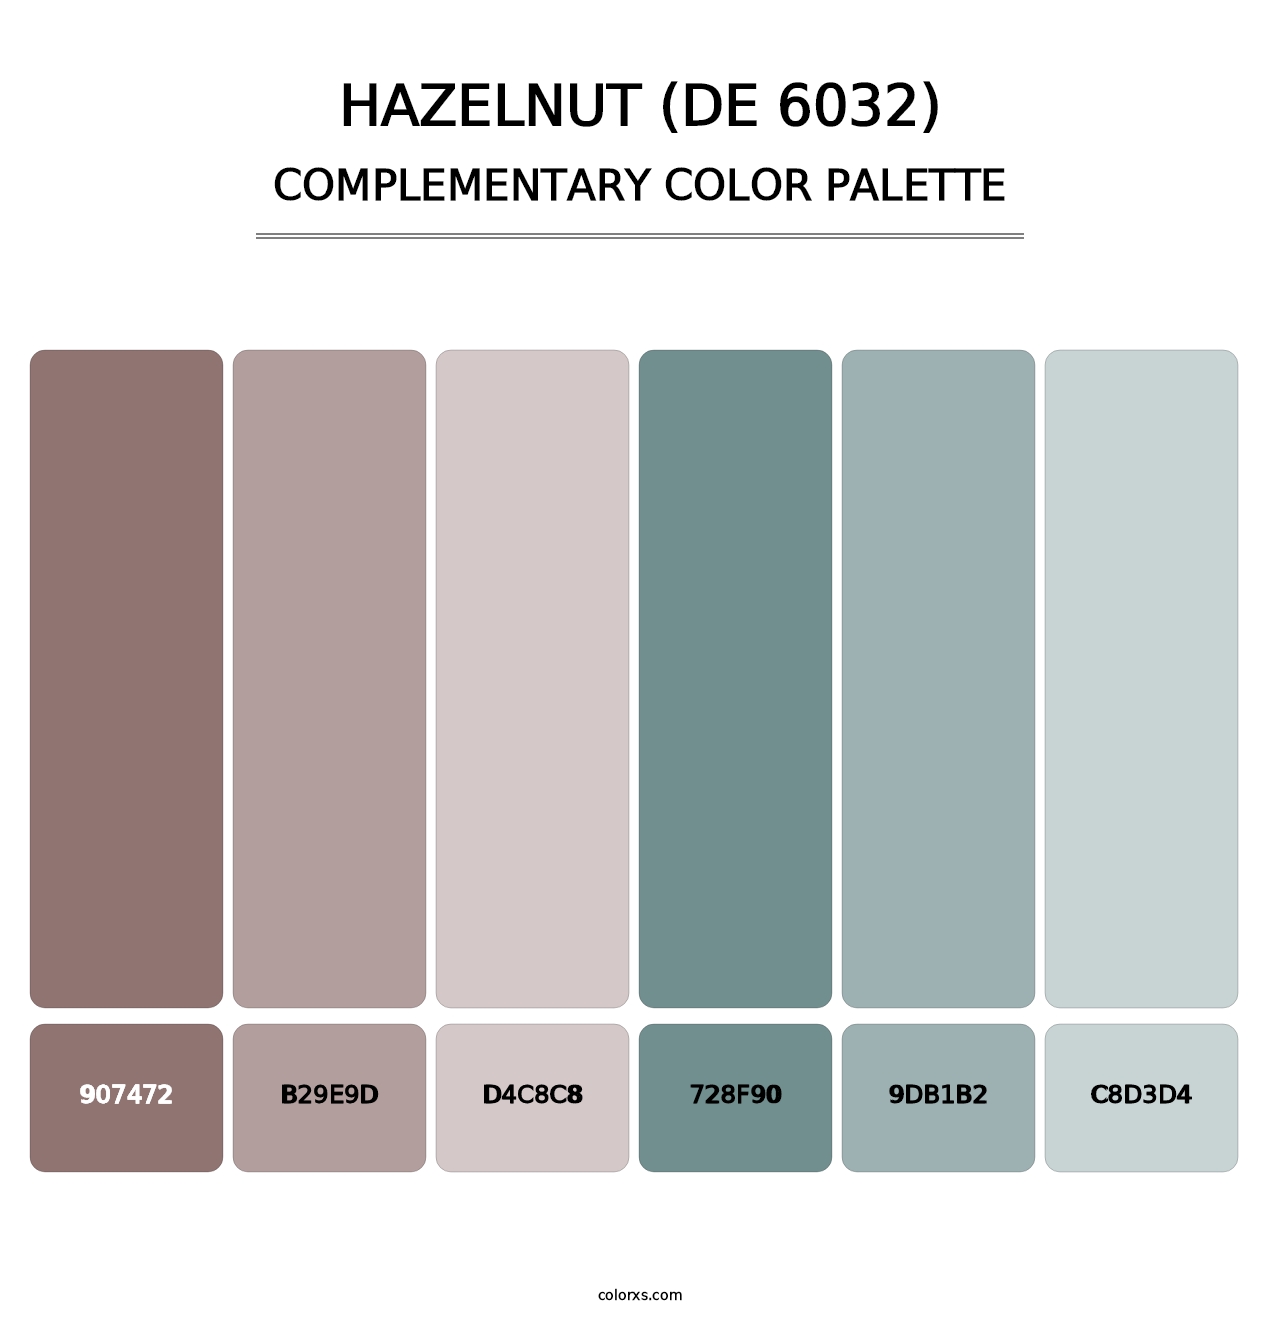 Hazelnut (DE 6032) - Complementary Color Palette